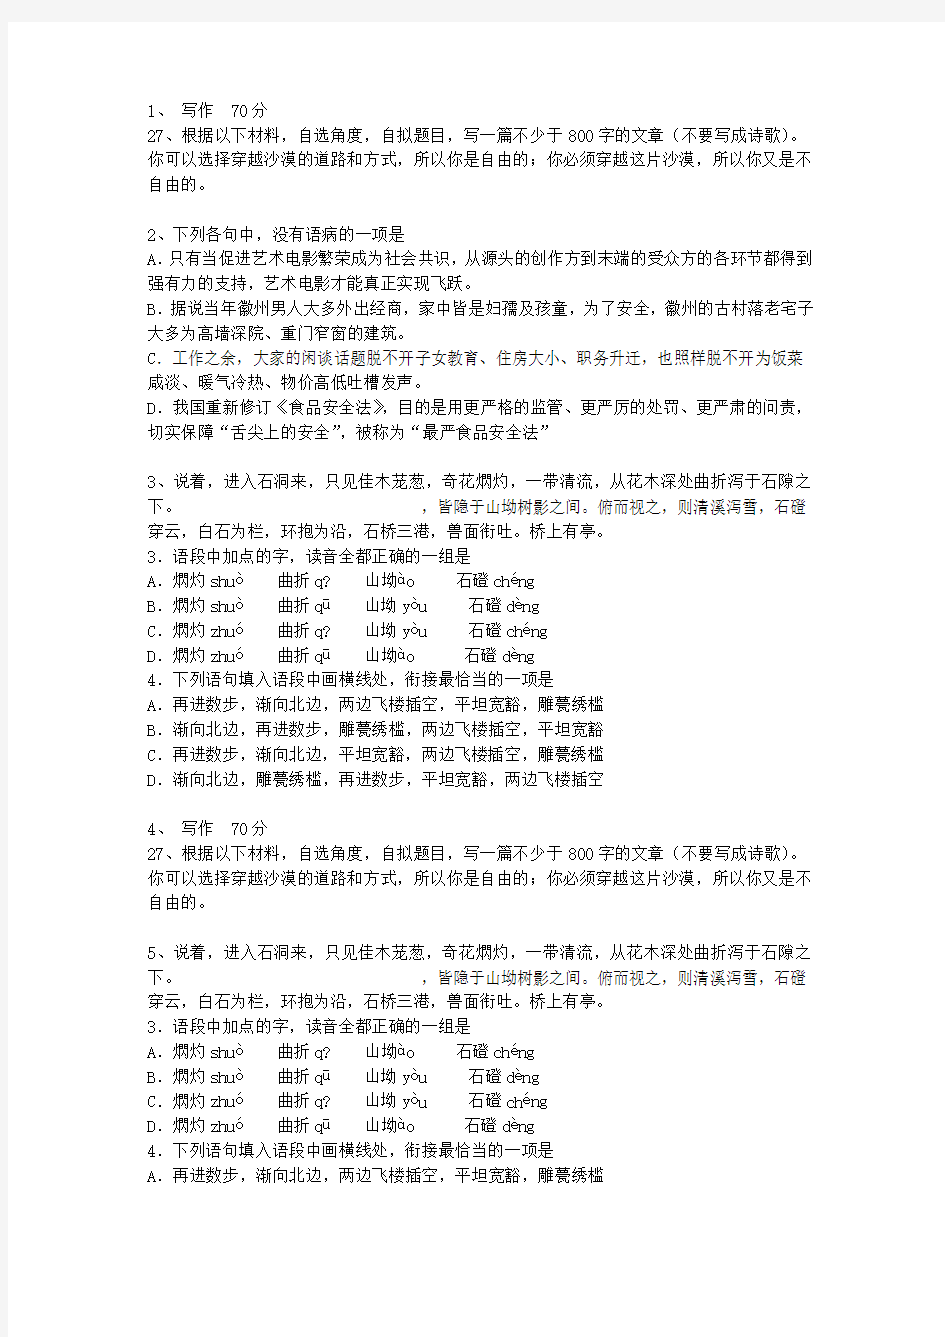 2015黑龙江省语文大纲(答案详解版)考试答题技巧